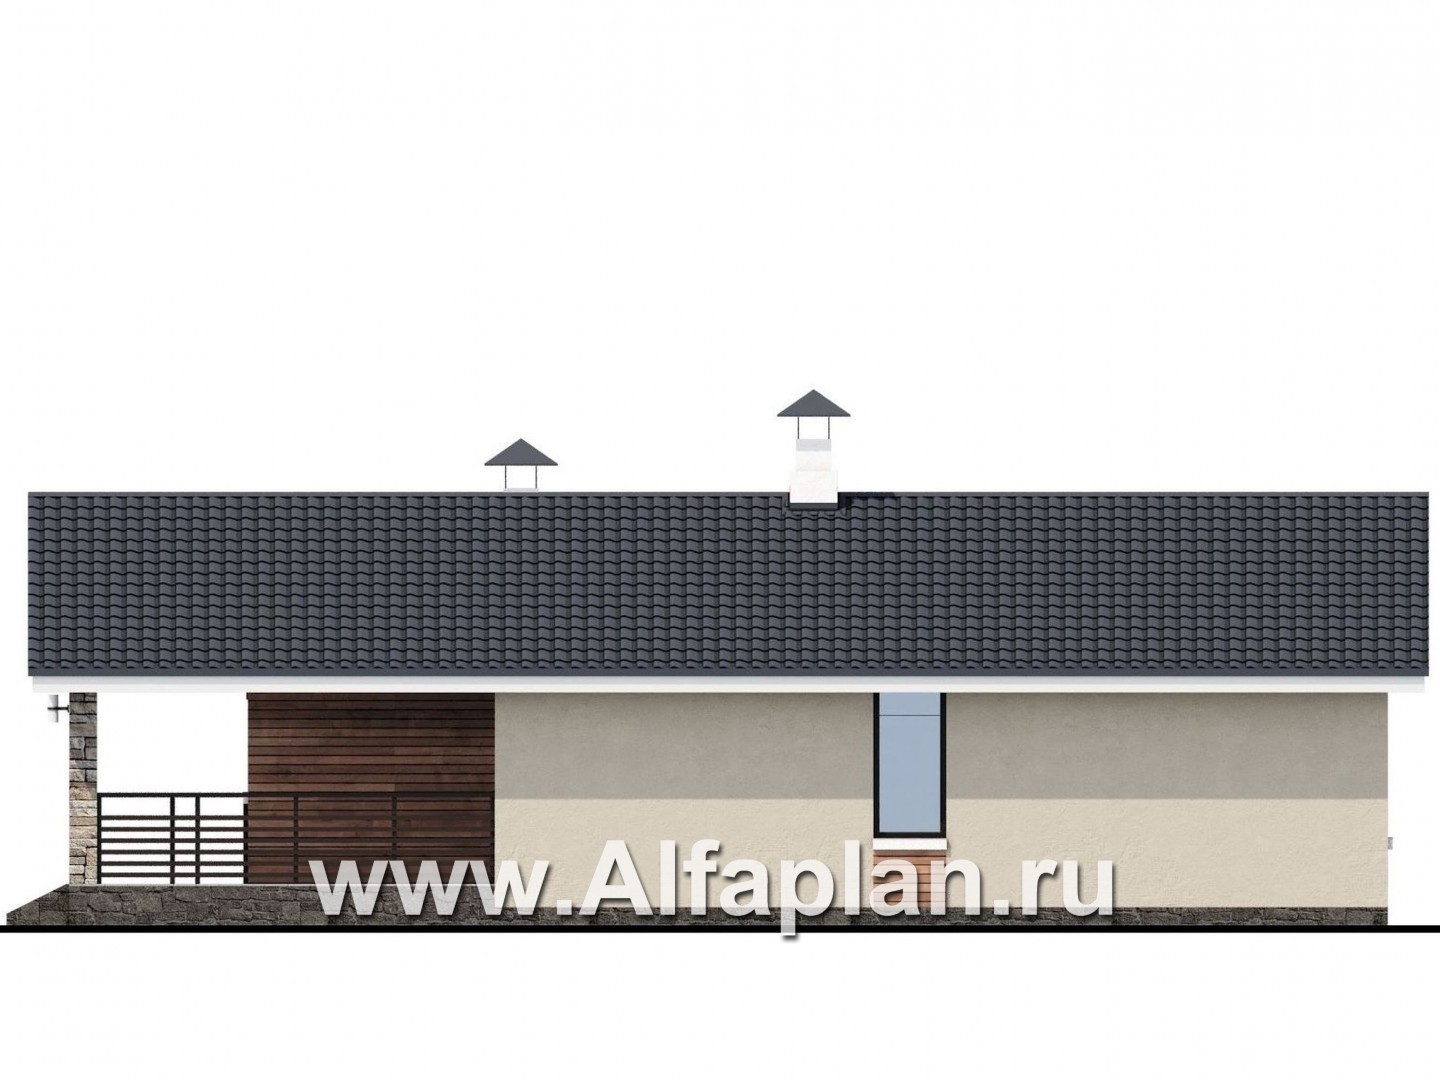 «Родия» - проект одноэтажного дома, 2 спальни, с террасой и двускатной крышей, в современном стиле - фасад дома